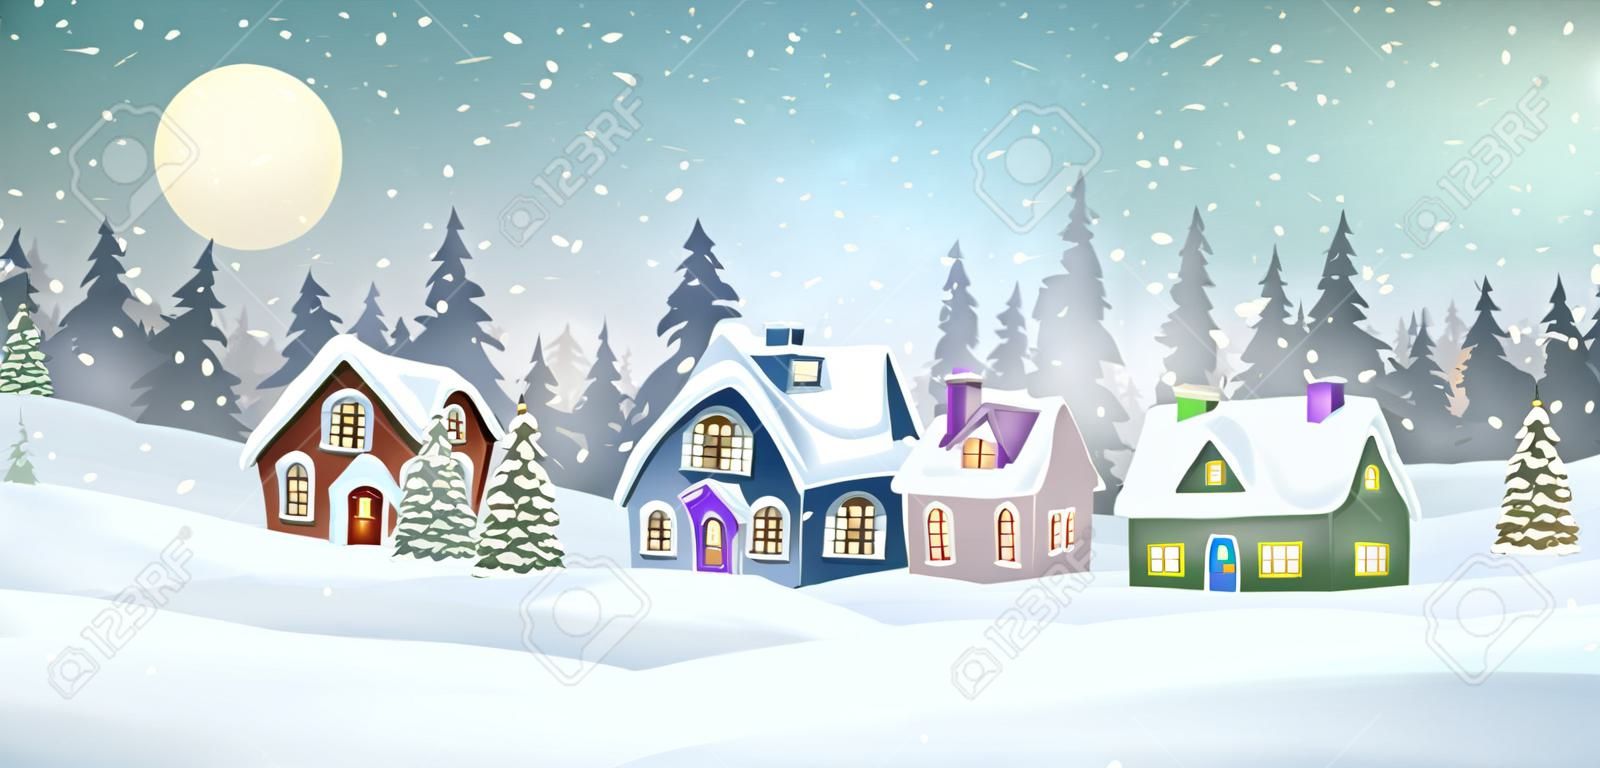 Winterdorflandschaft mit schneebedeckten Häusern im Pinienwald. Weihnachtsferien-Vektor-Illustration